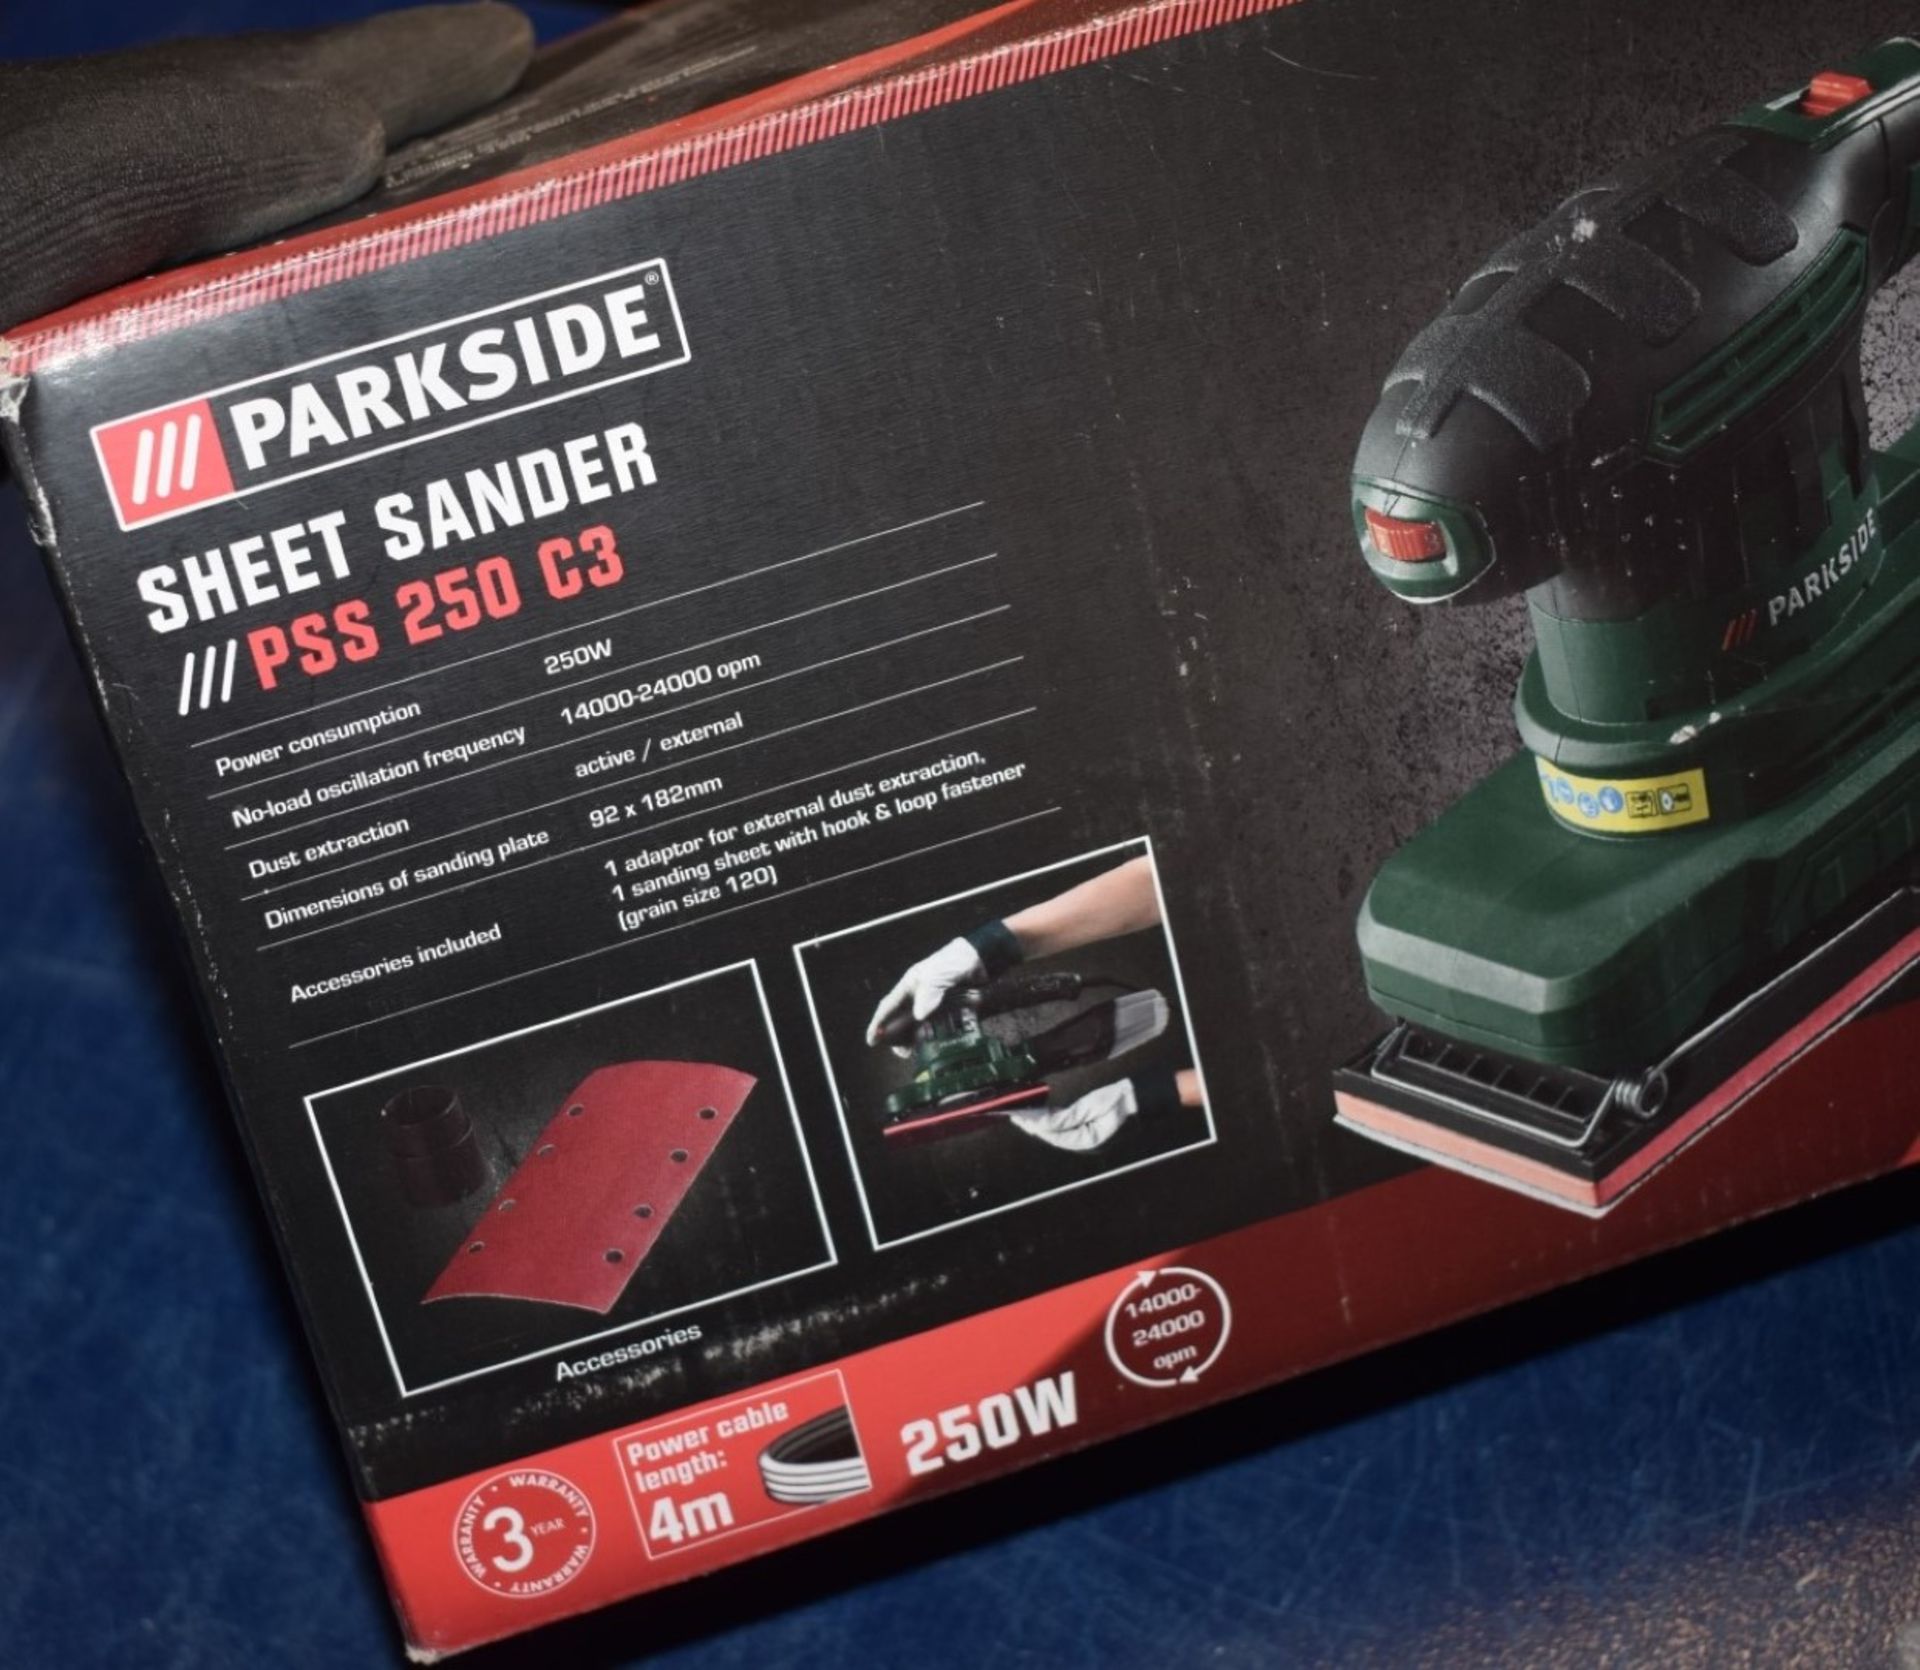 1 x Parkside Sheet Sander in Original Box 240V With Spare Sanding Sheets Model PSS 250 C3 - Image 2 of 6